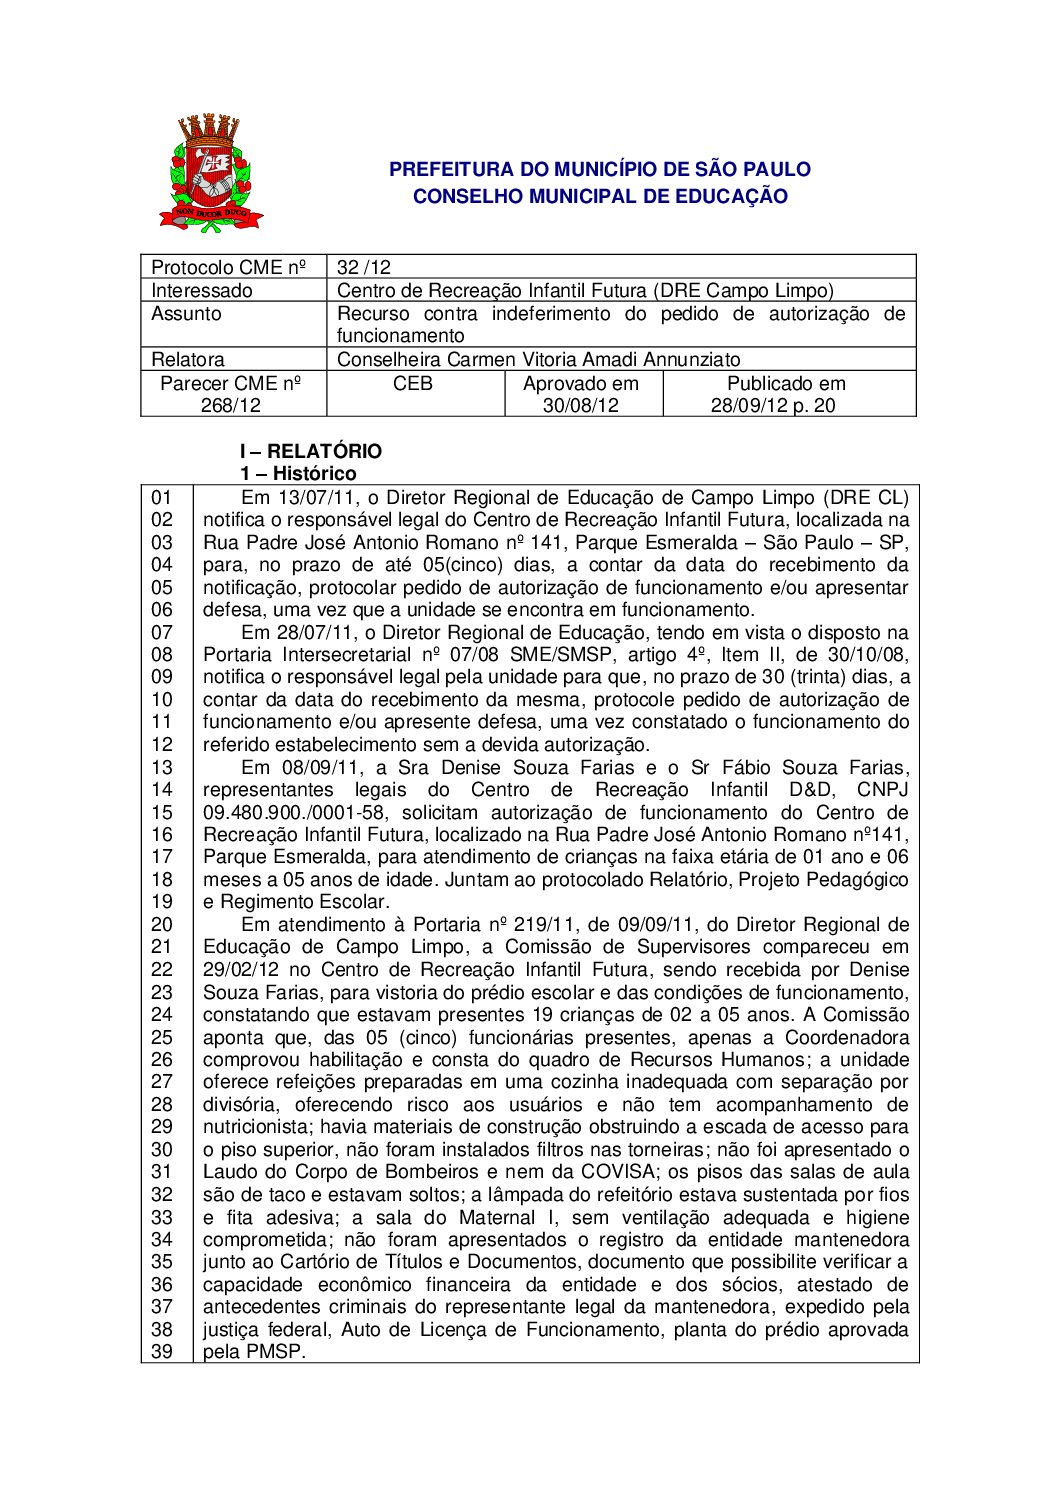 Parecer CME nº 268/2012 - Centro de Recreação Infantil Futura (DRE Campo Limpo) - Recurso contra indeferimento do pedido de autorização de funcionamento 